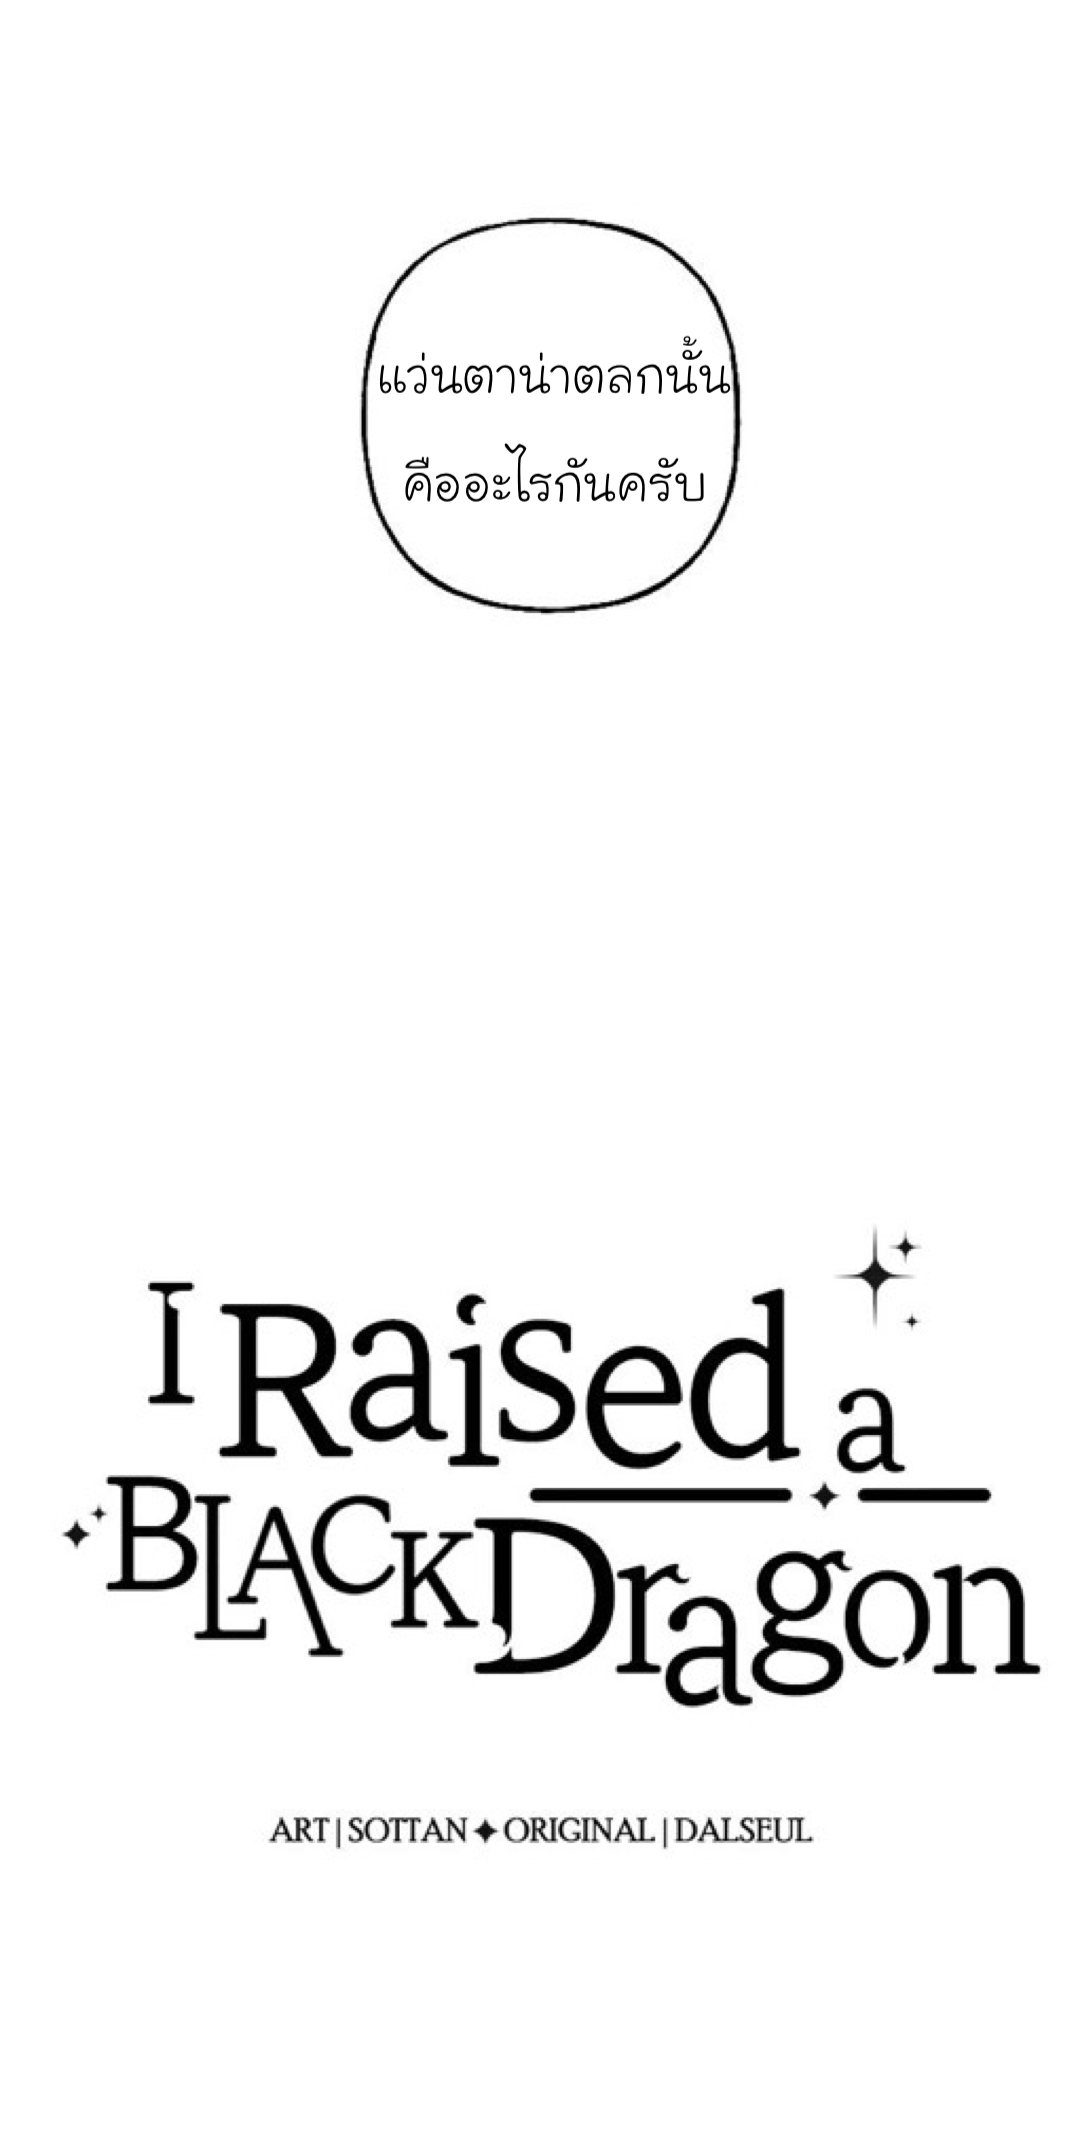 I Raised a Black Dragon 18 02